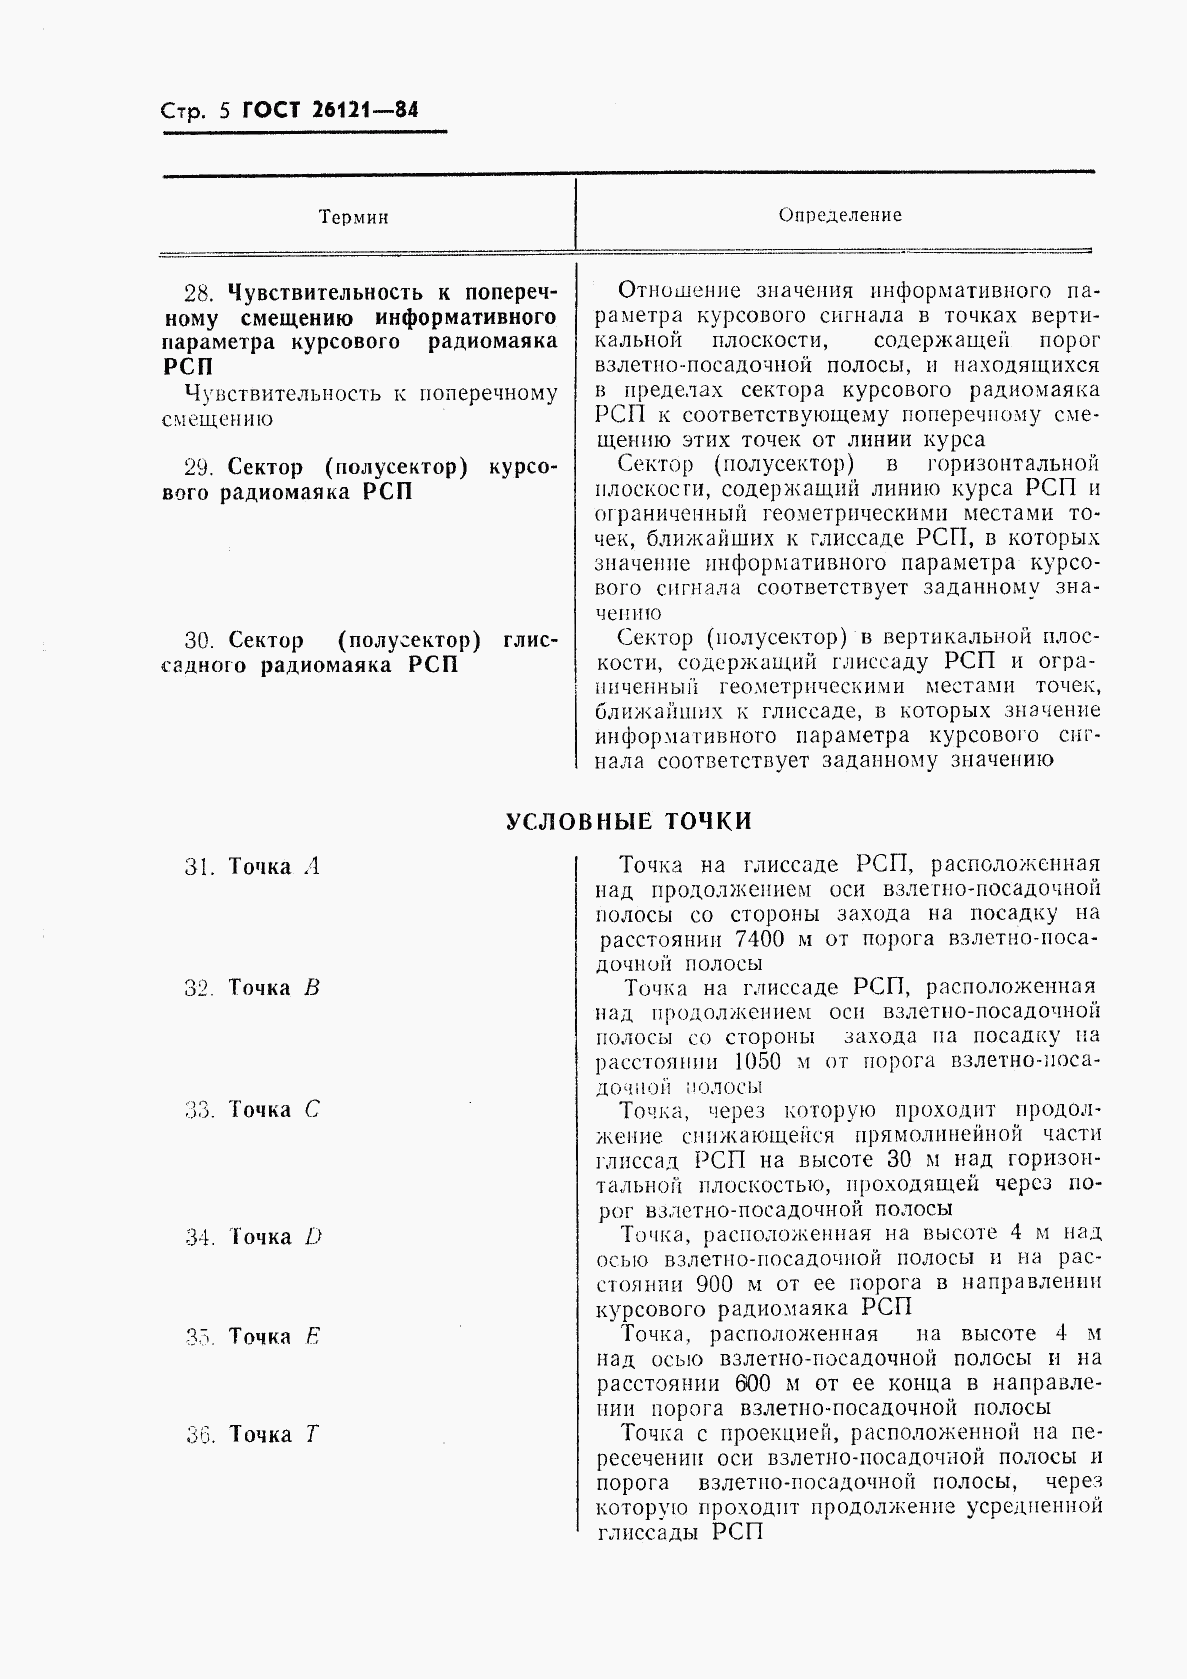 ГОСТ 26121-84, страница 6